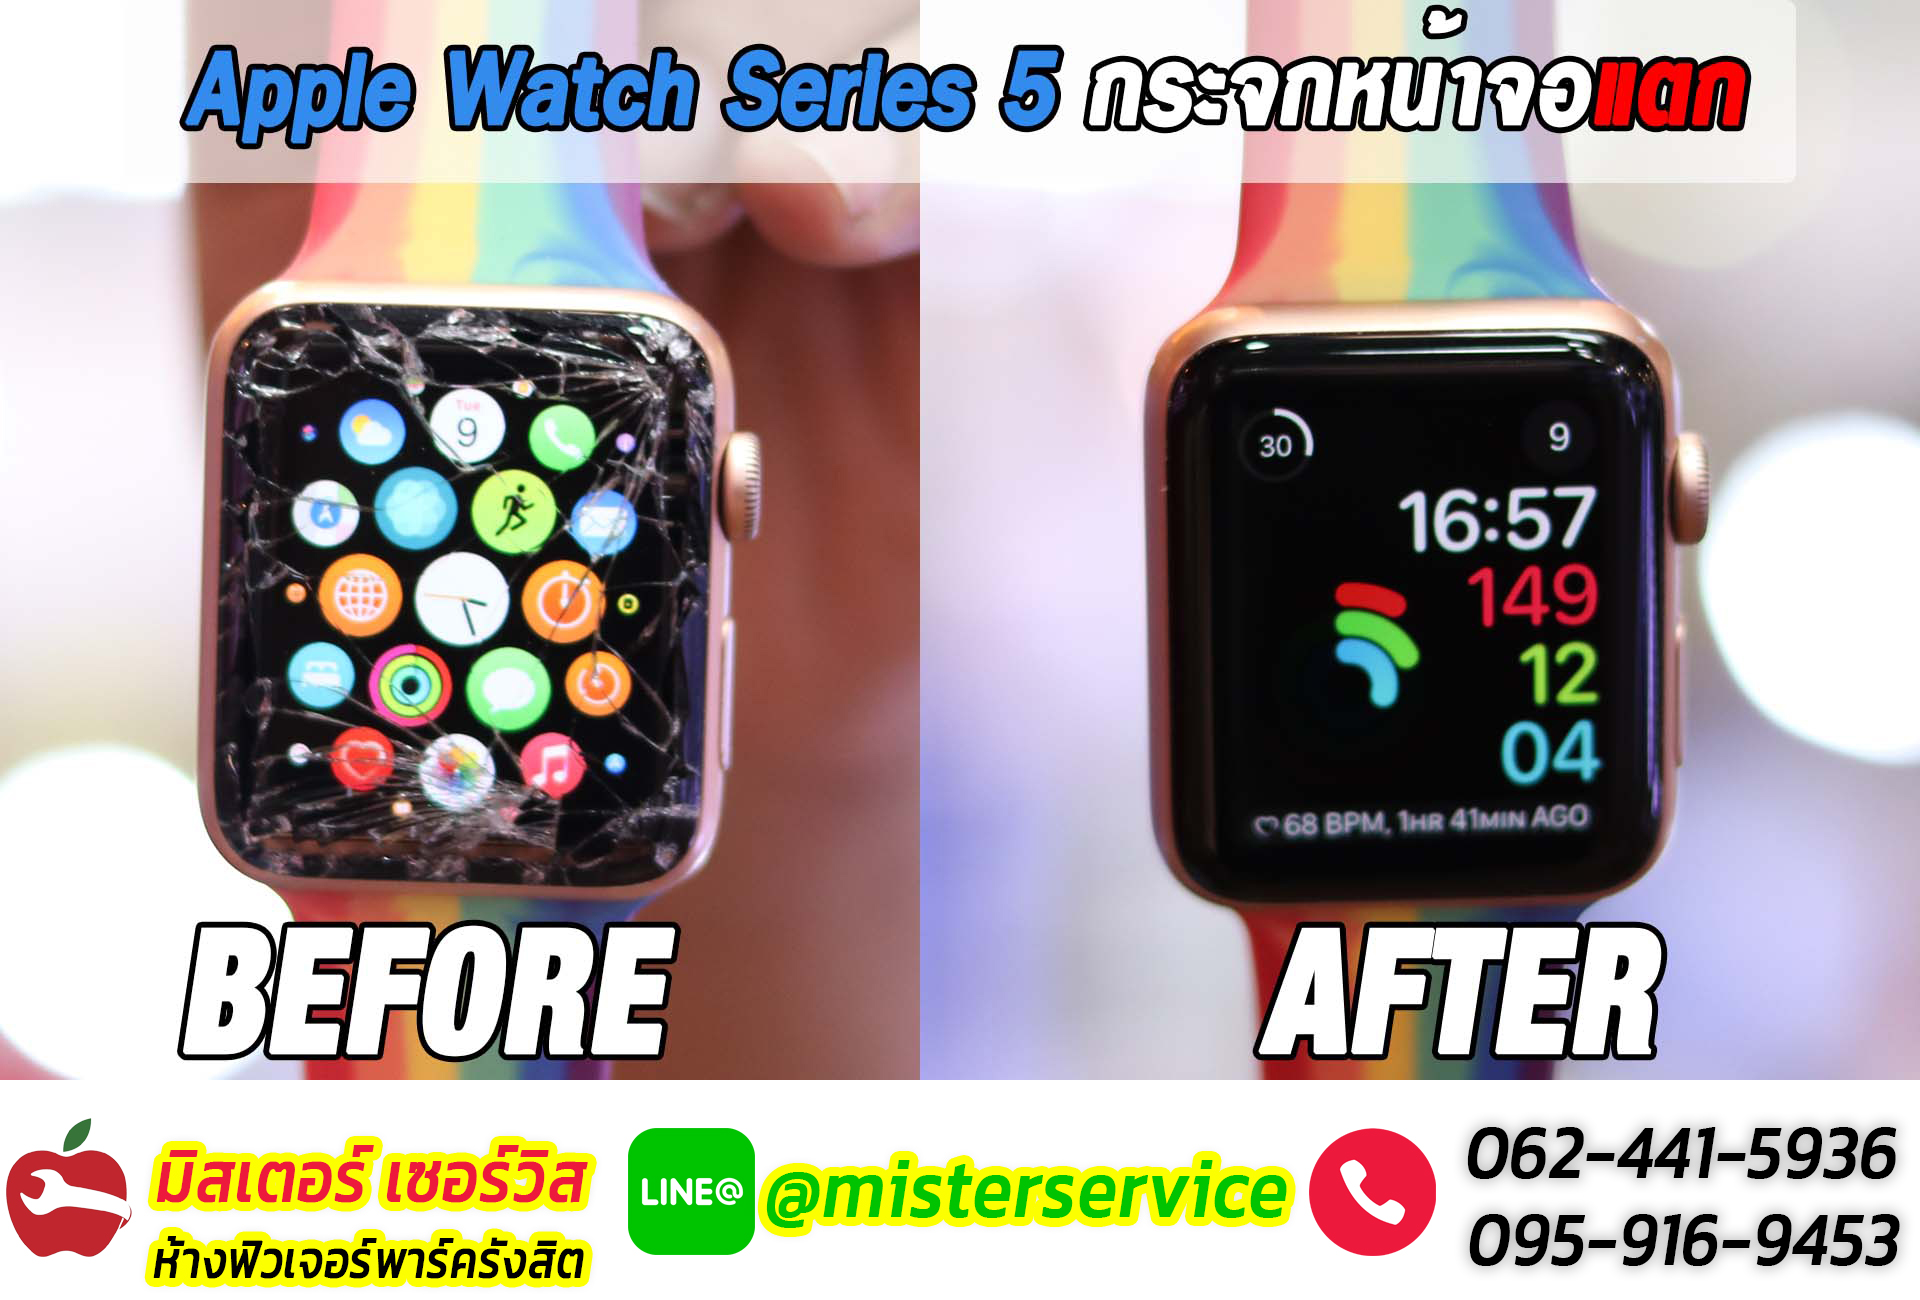 ซ่อม Apple Watch ศรีสระเกษ